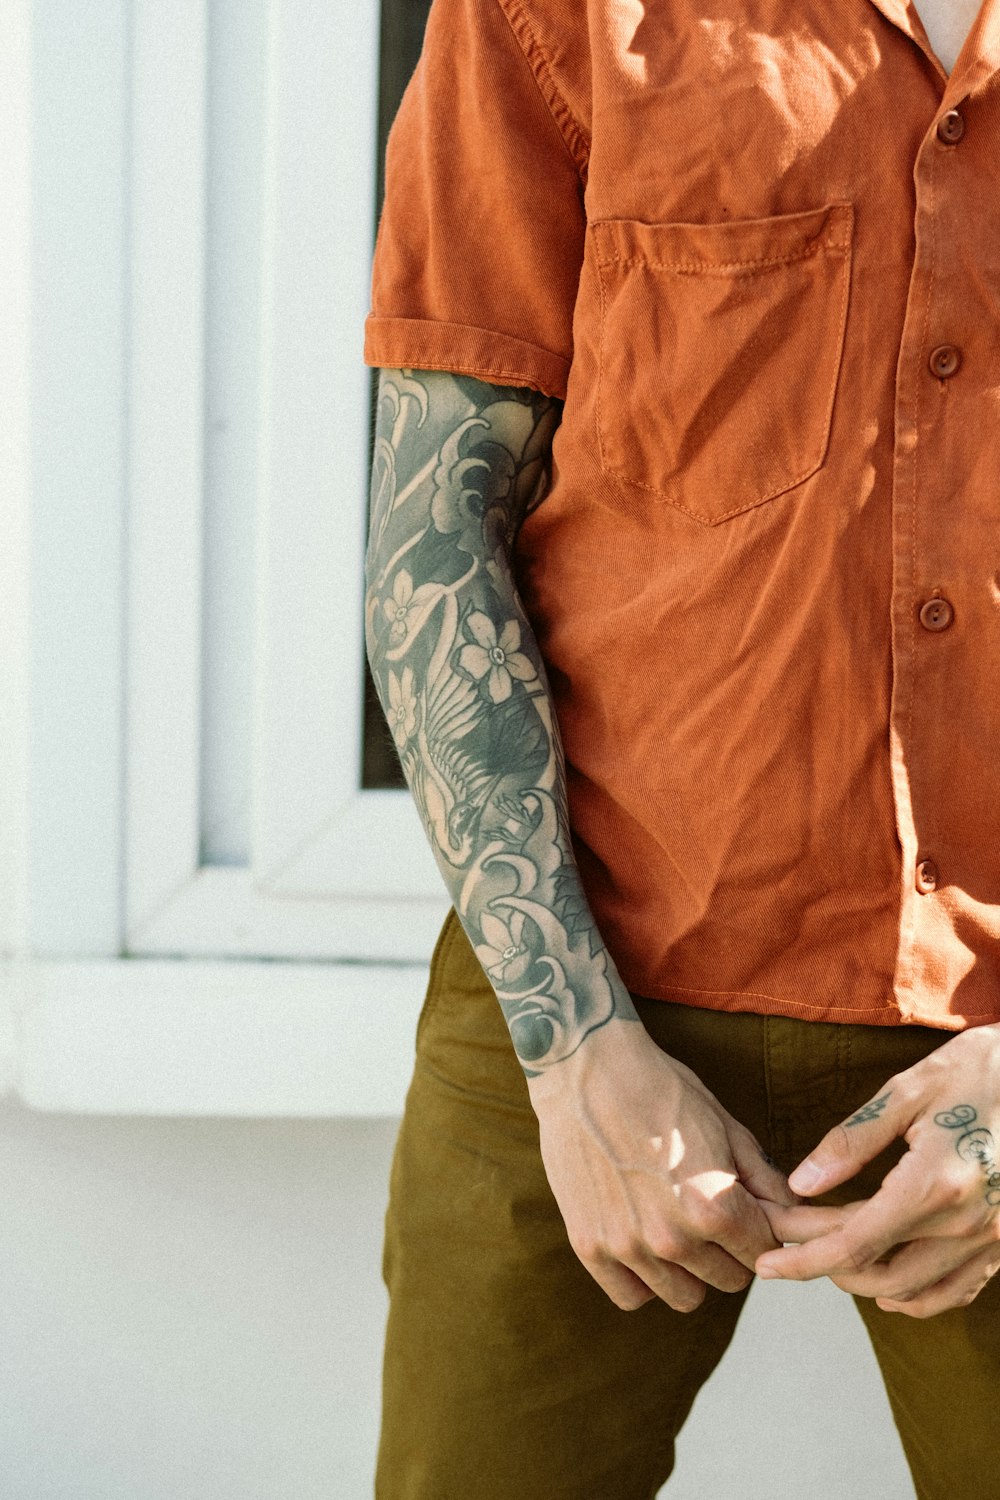 Mann in orangefarbenem Button-Up-Shirt mit schwarz-grauem Arm-Tattoo